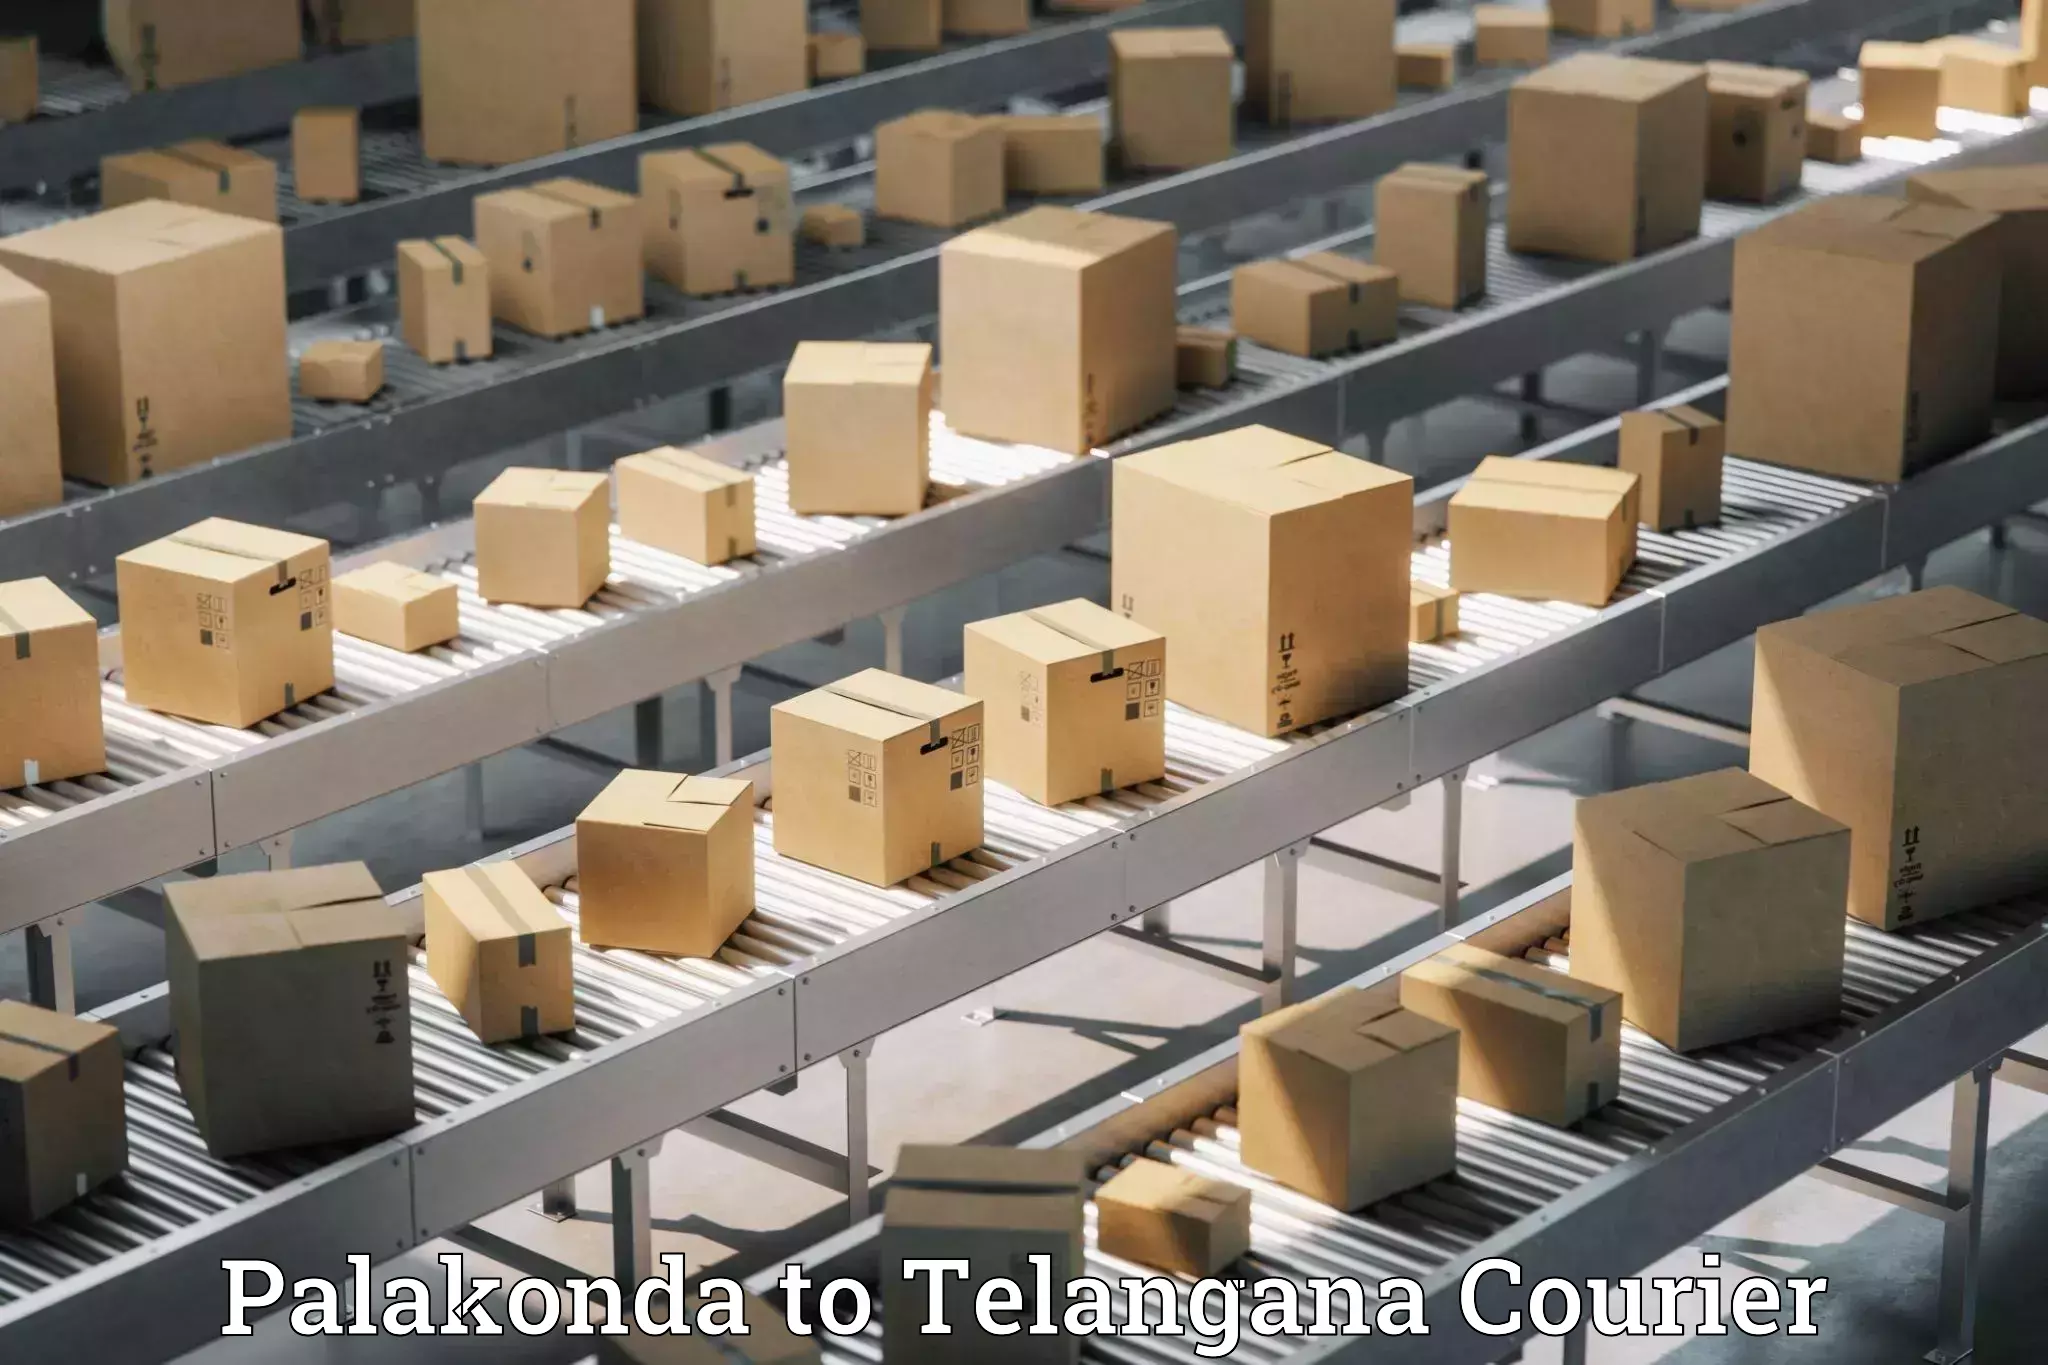 Nationwide shipping capabilities Palakonda to Balanagar